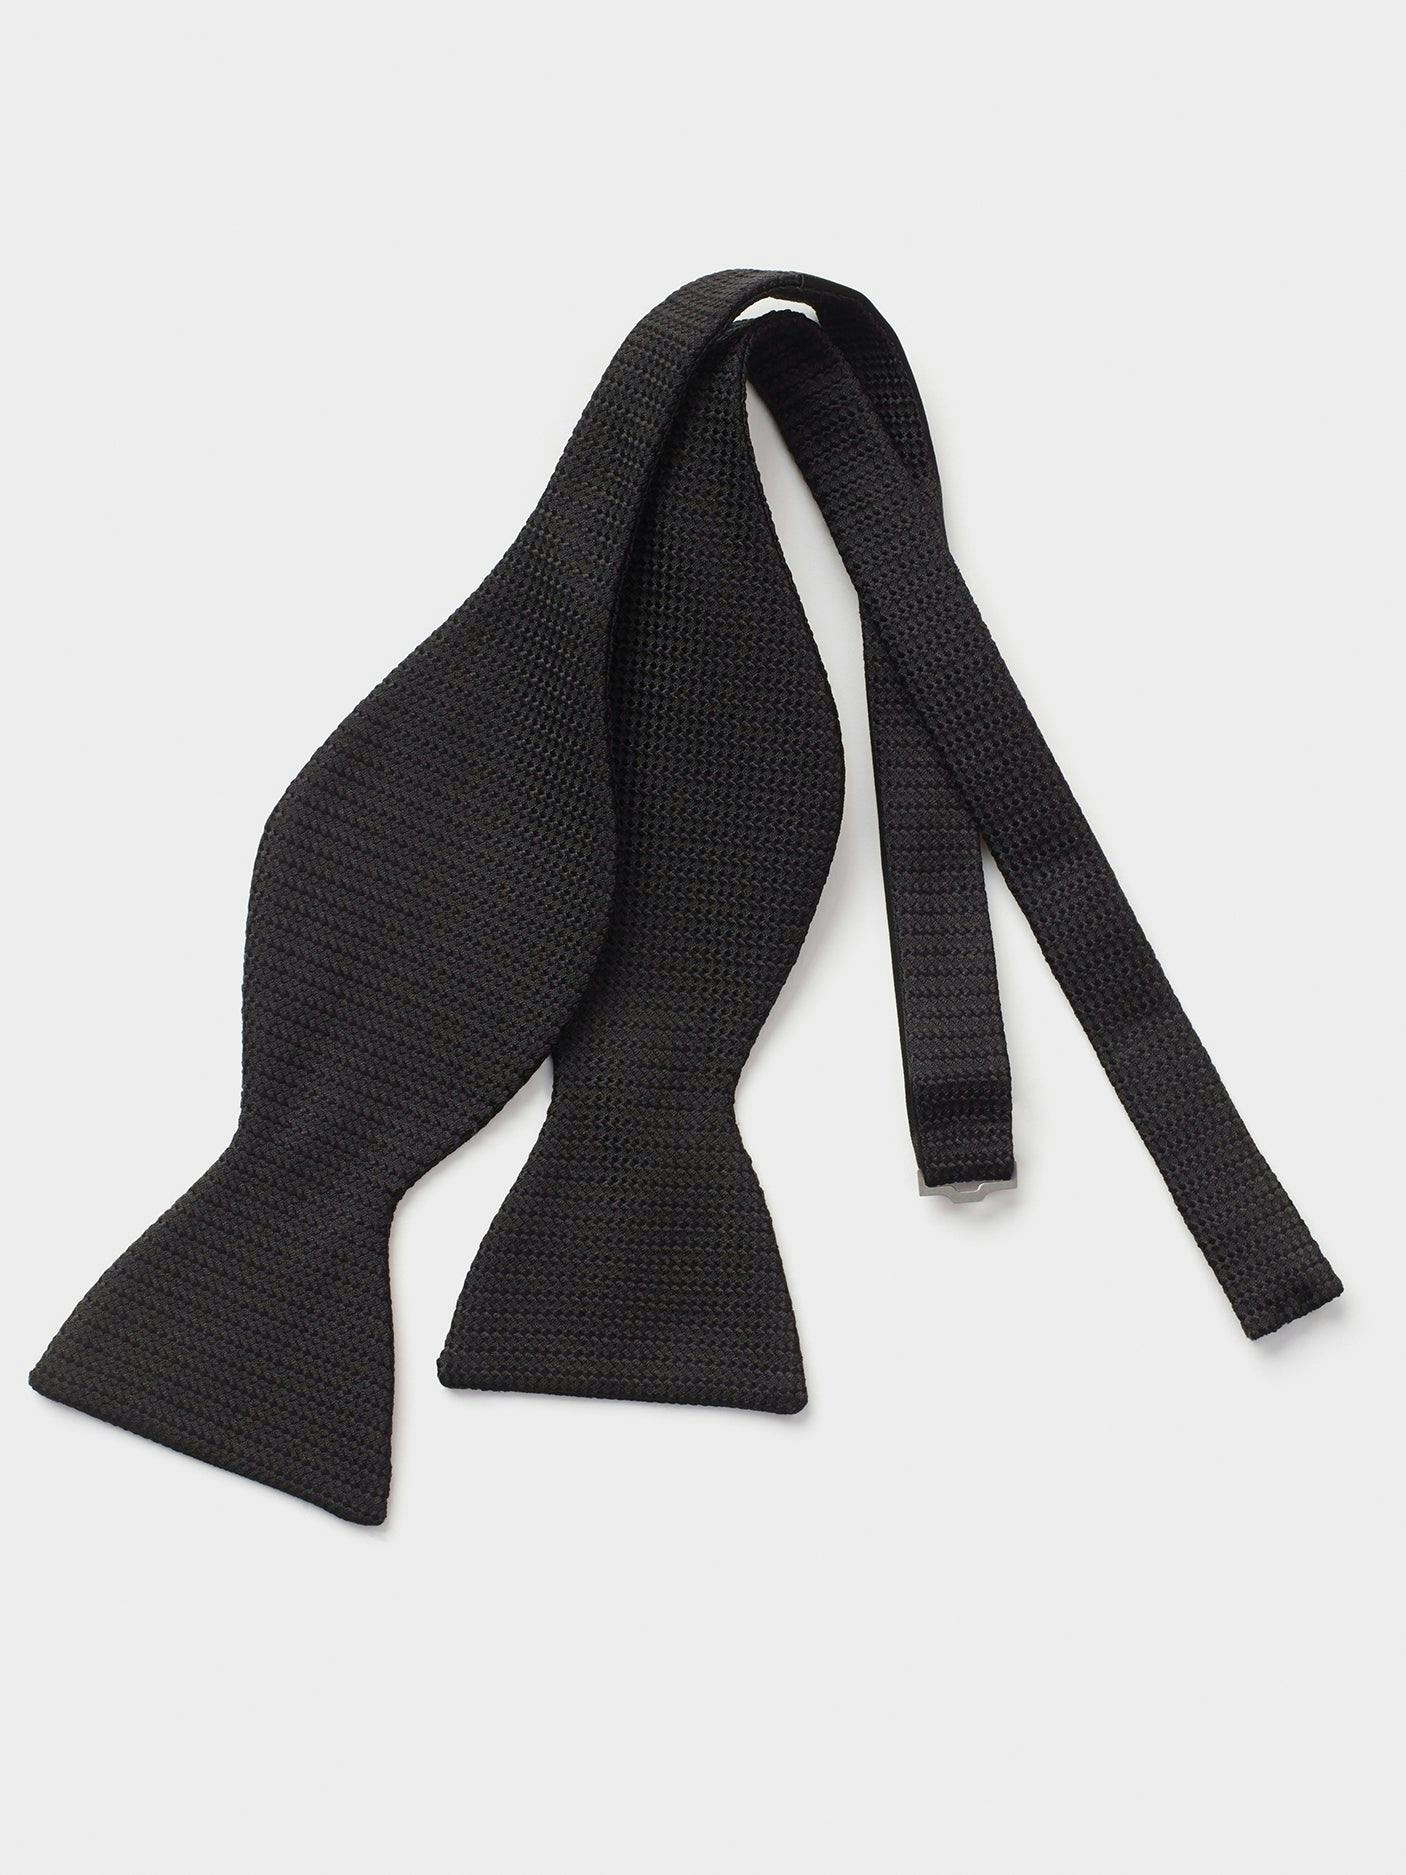 Black Textured Silk Bow Tie